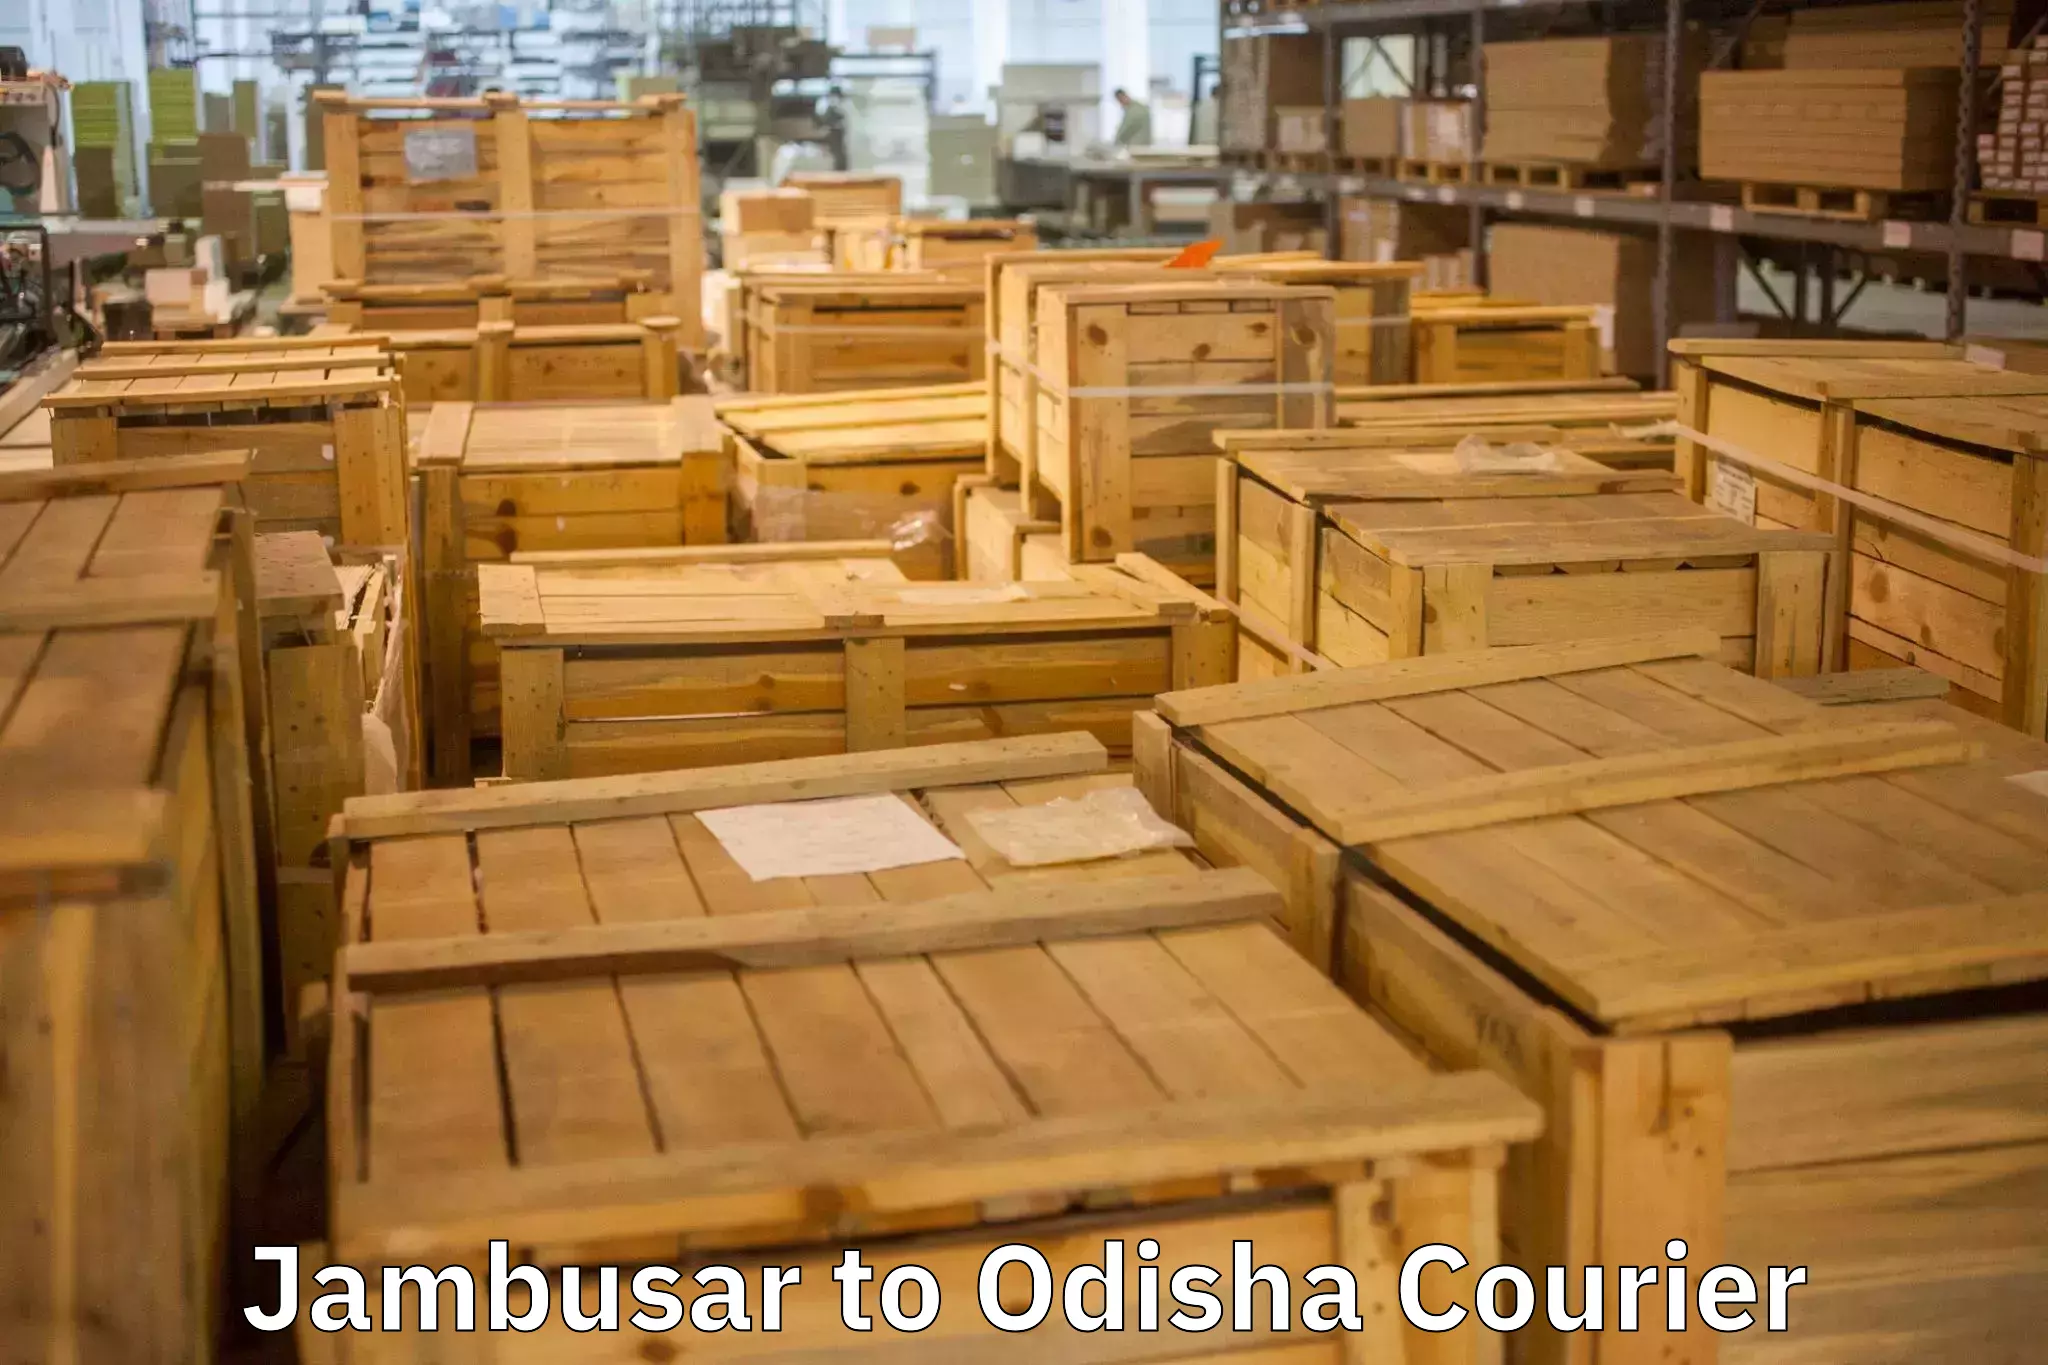 Professional home movers Jambusar to Odisha